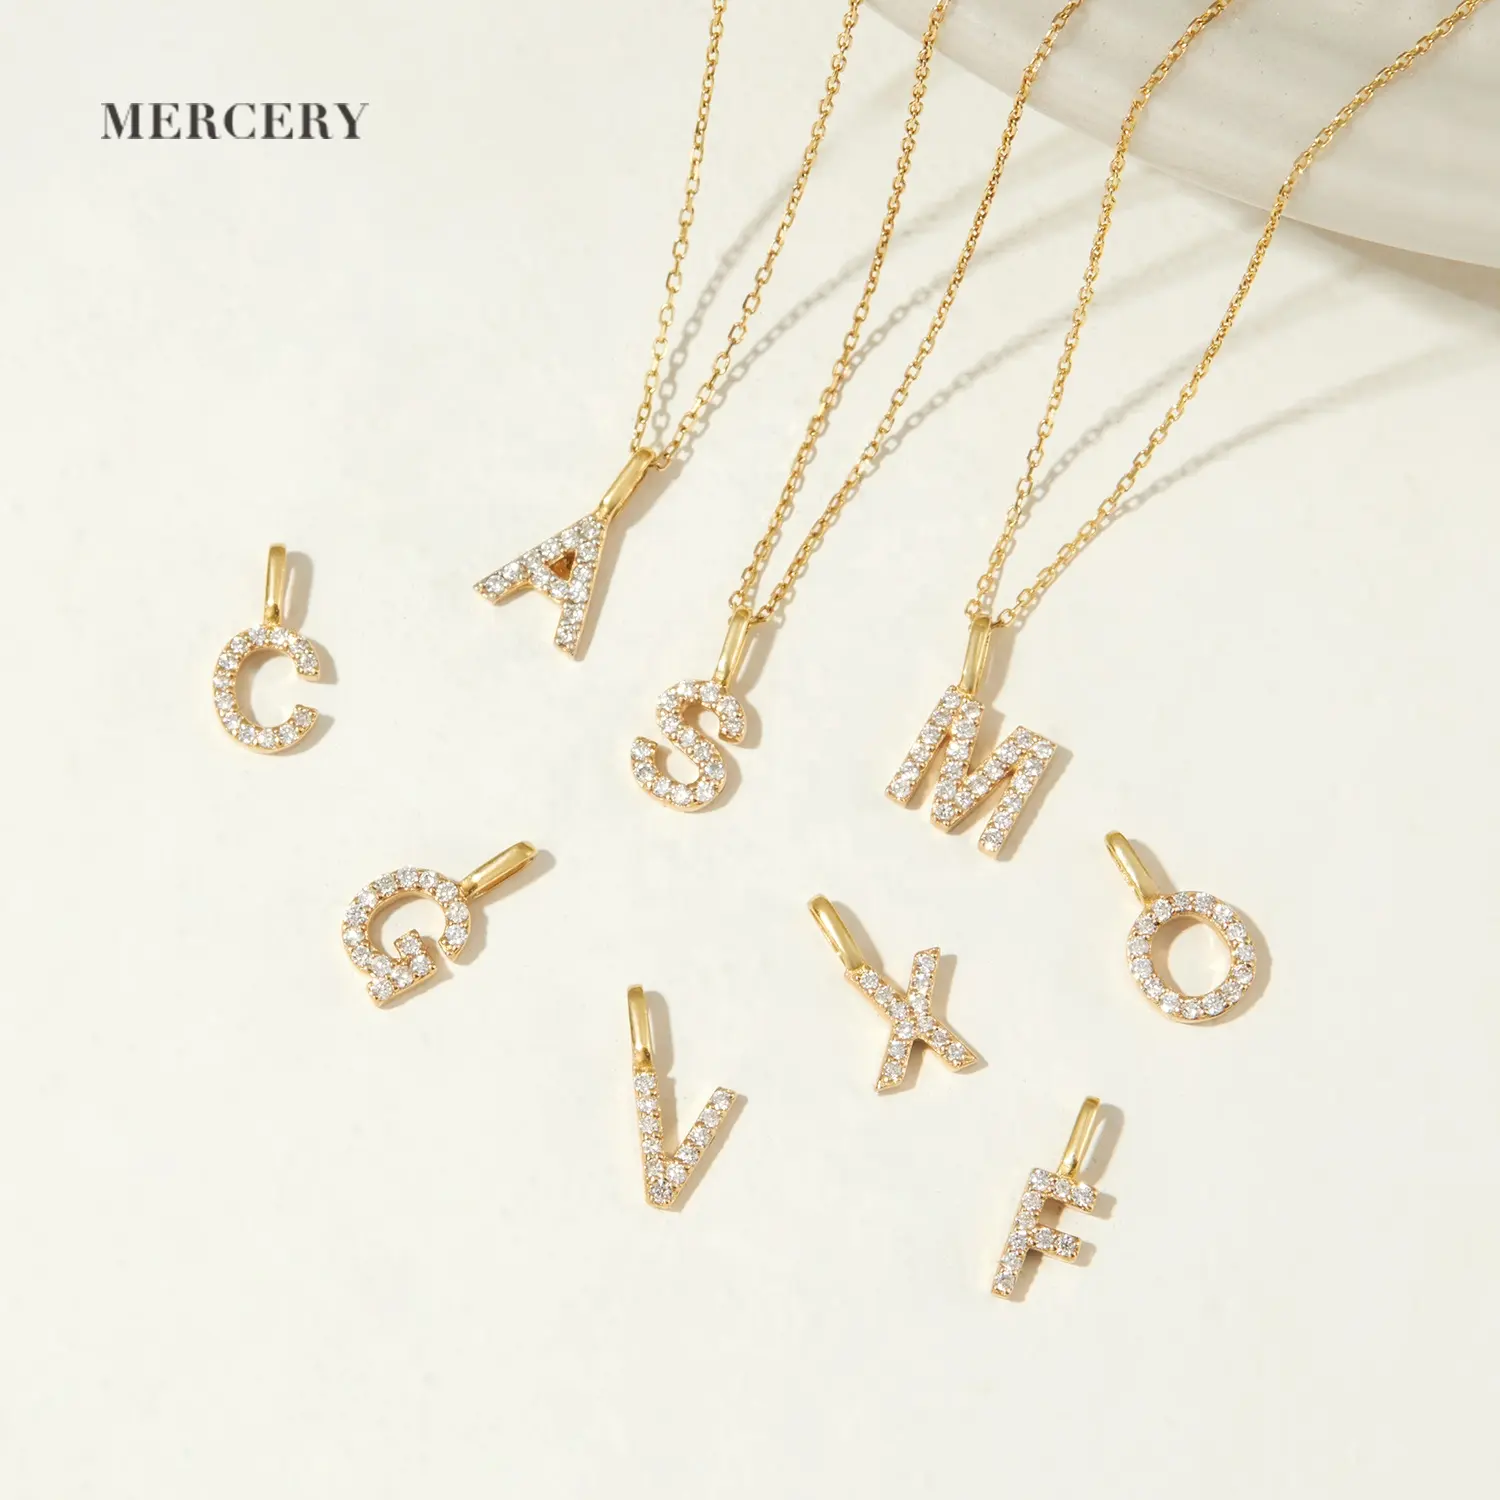 Mercery Dropshipping bandul huruf Inggris 26 "berlian asli 14k liontin A-Z emas padat untuk gelang kalung perhiasan DIY